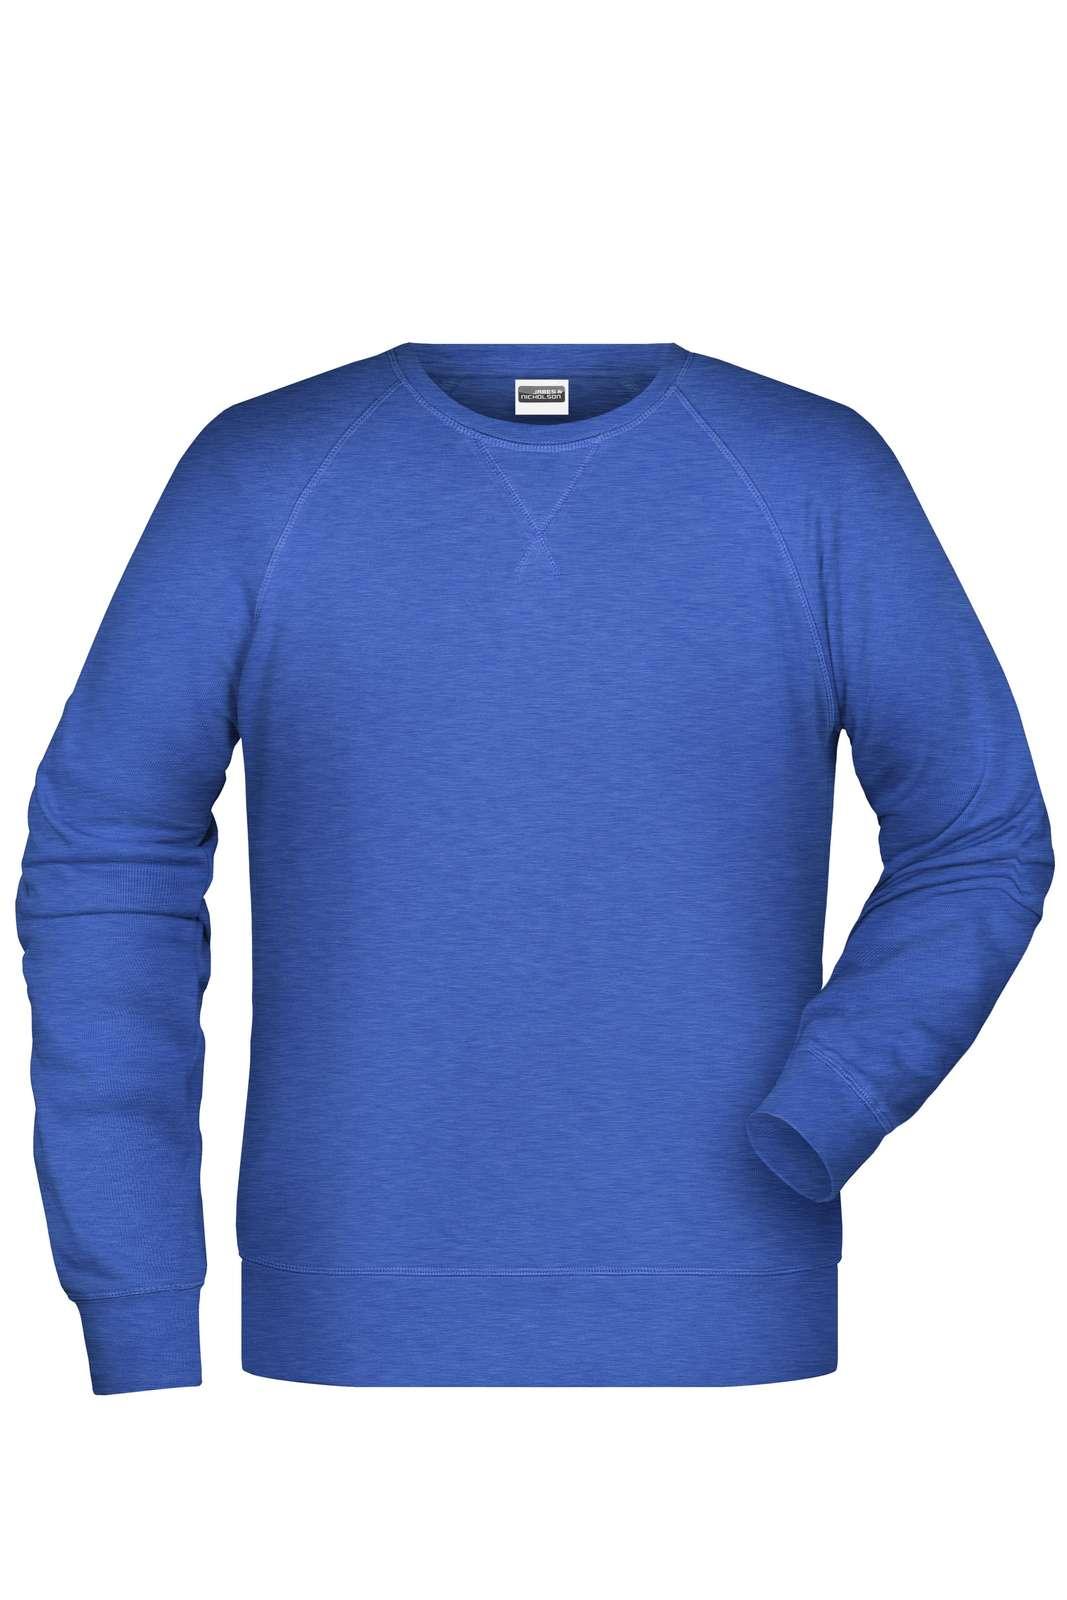 J&N MEN'S SWEAT - Sweatshirt - JA Profil 